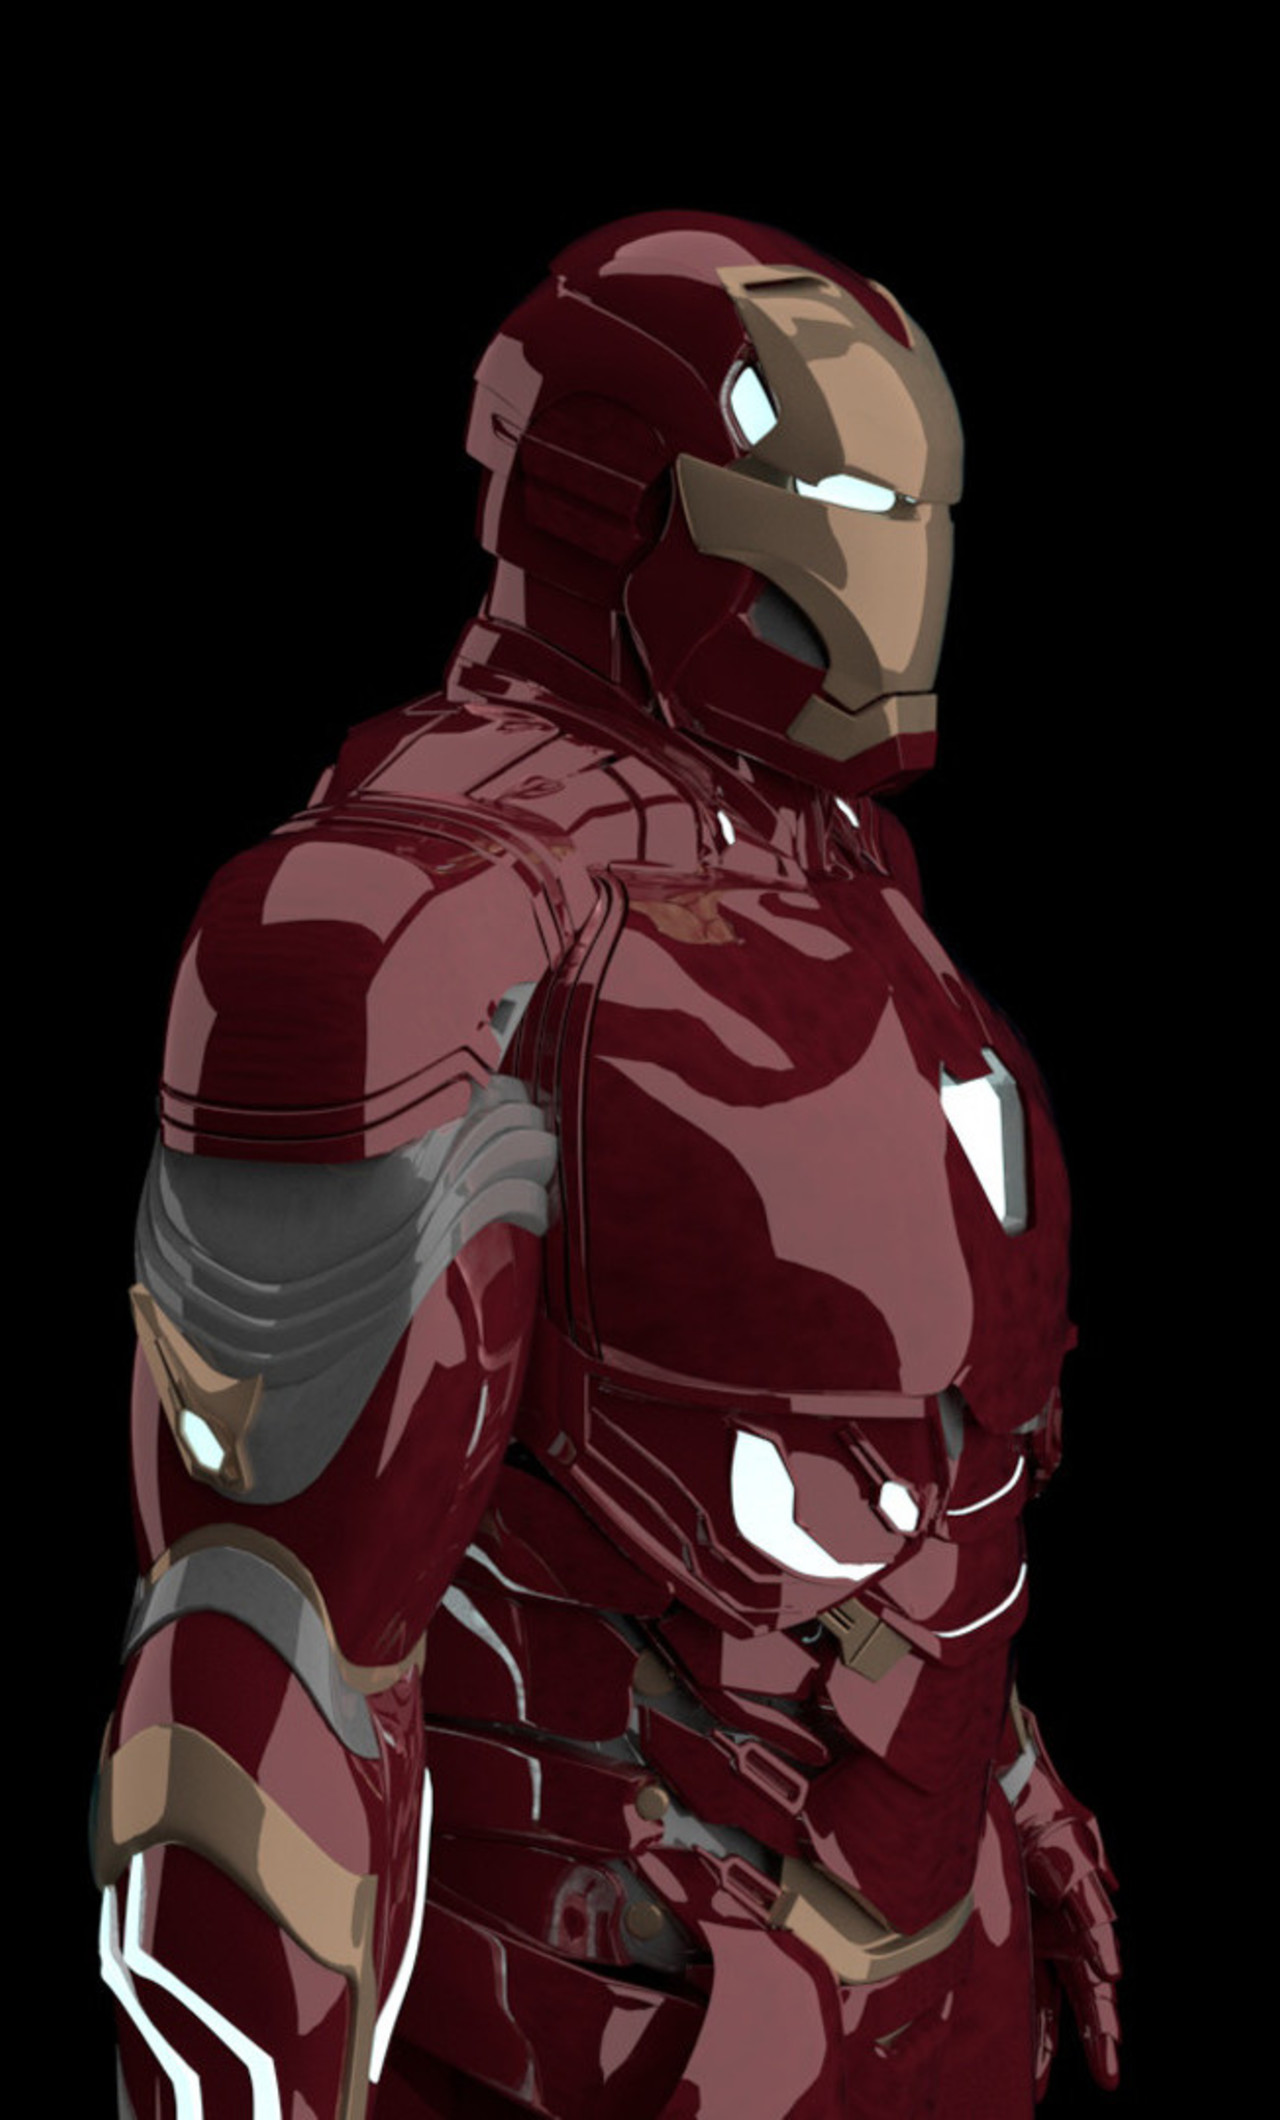 iron man wallpaper für iphone 6,ironman,superheld,erfundener charakter,rächer